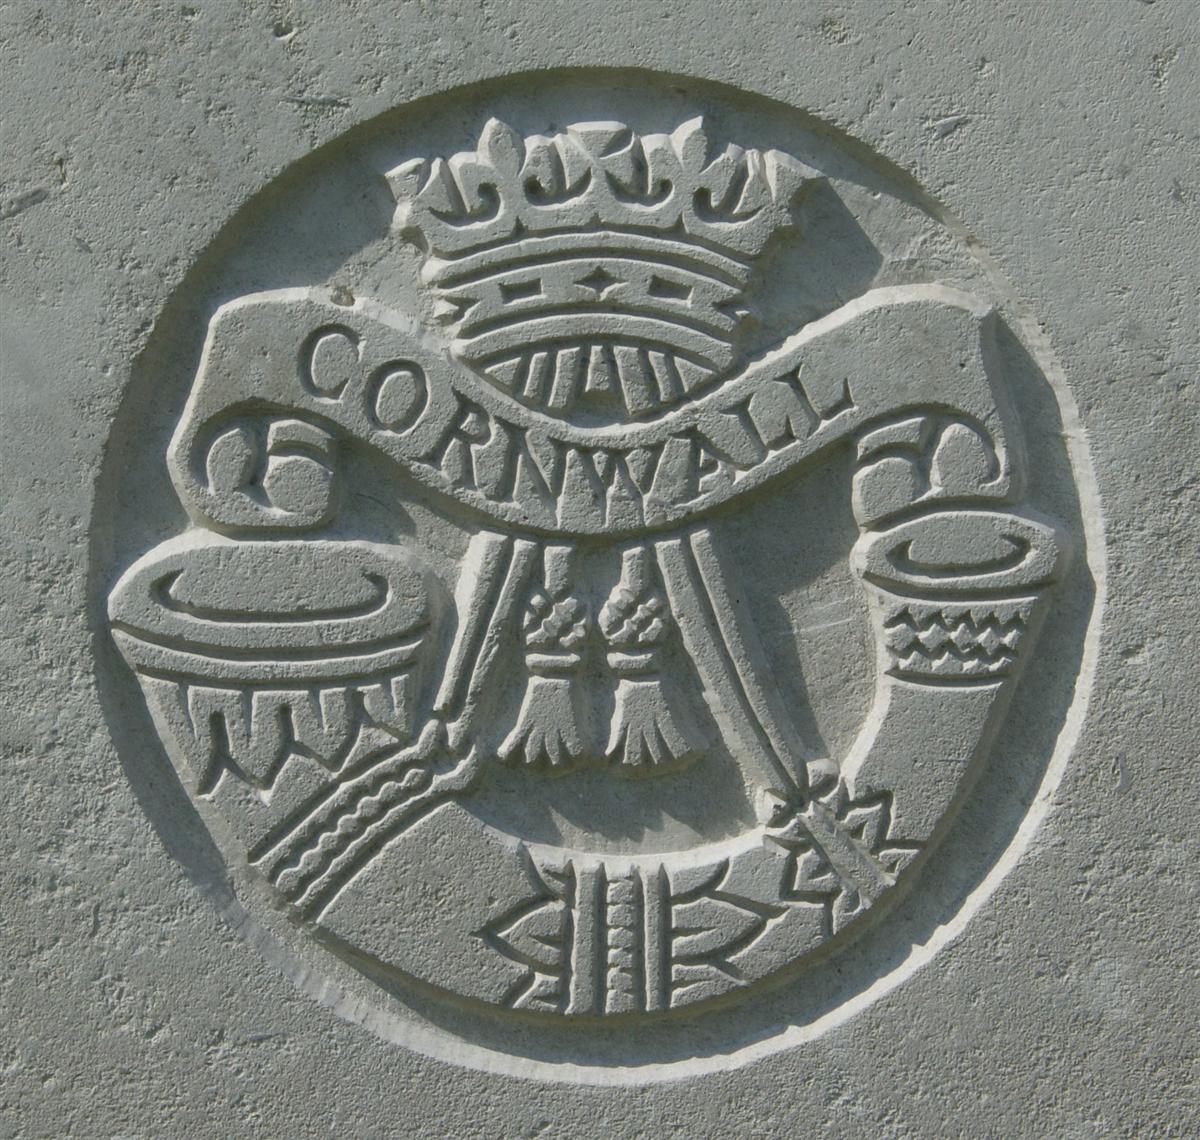 Duke of Cornwall's Light Infantry badge